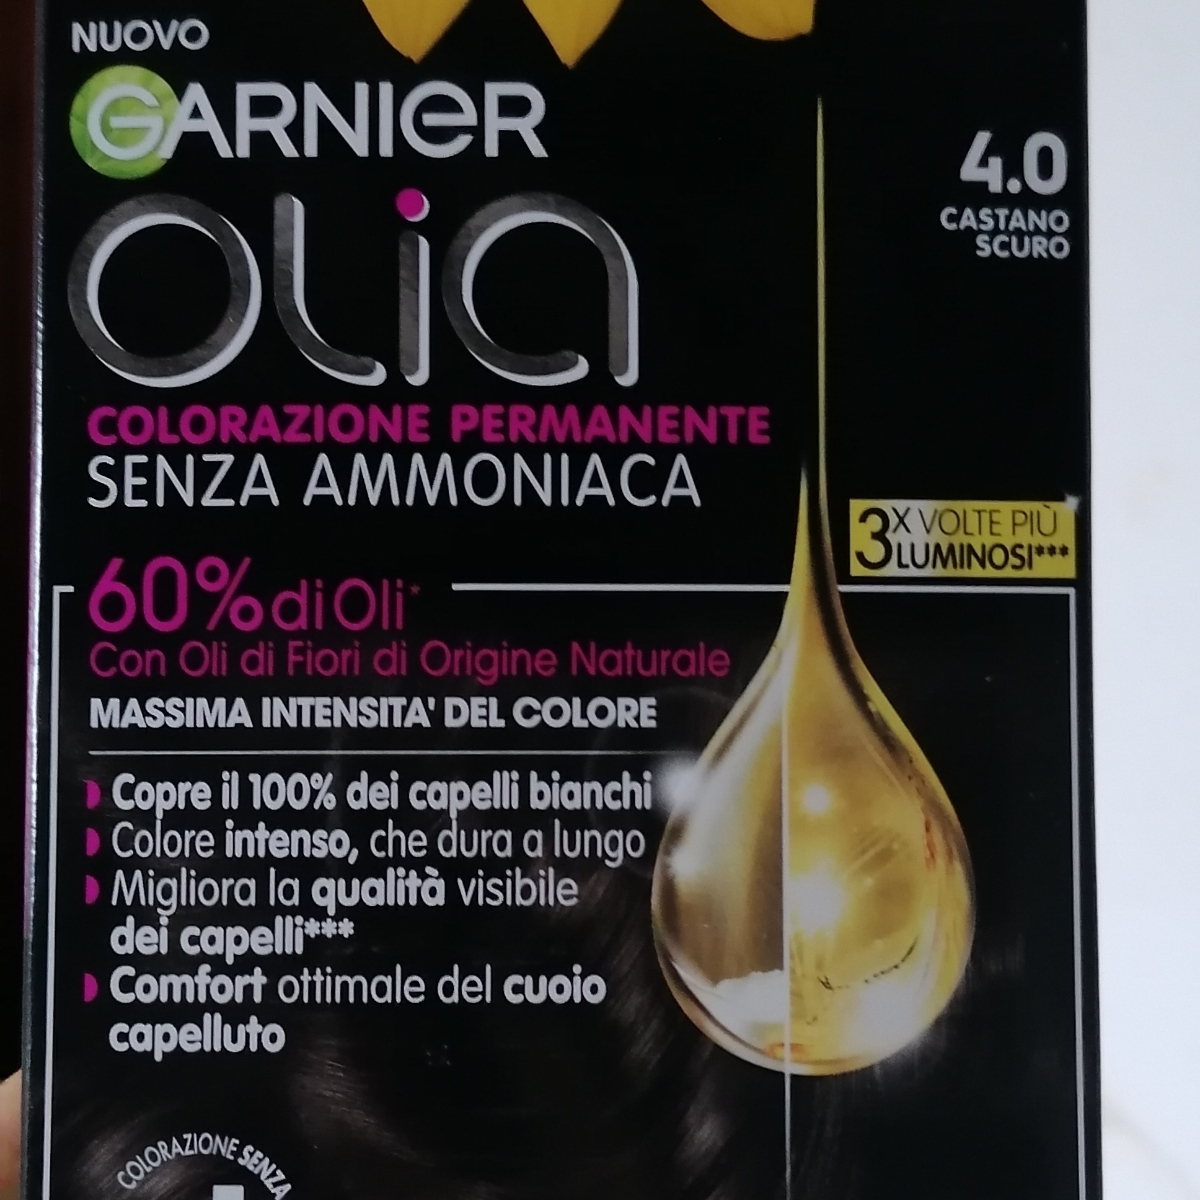 Garnier olia castano scuro 4.0 Reviews | abillion